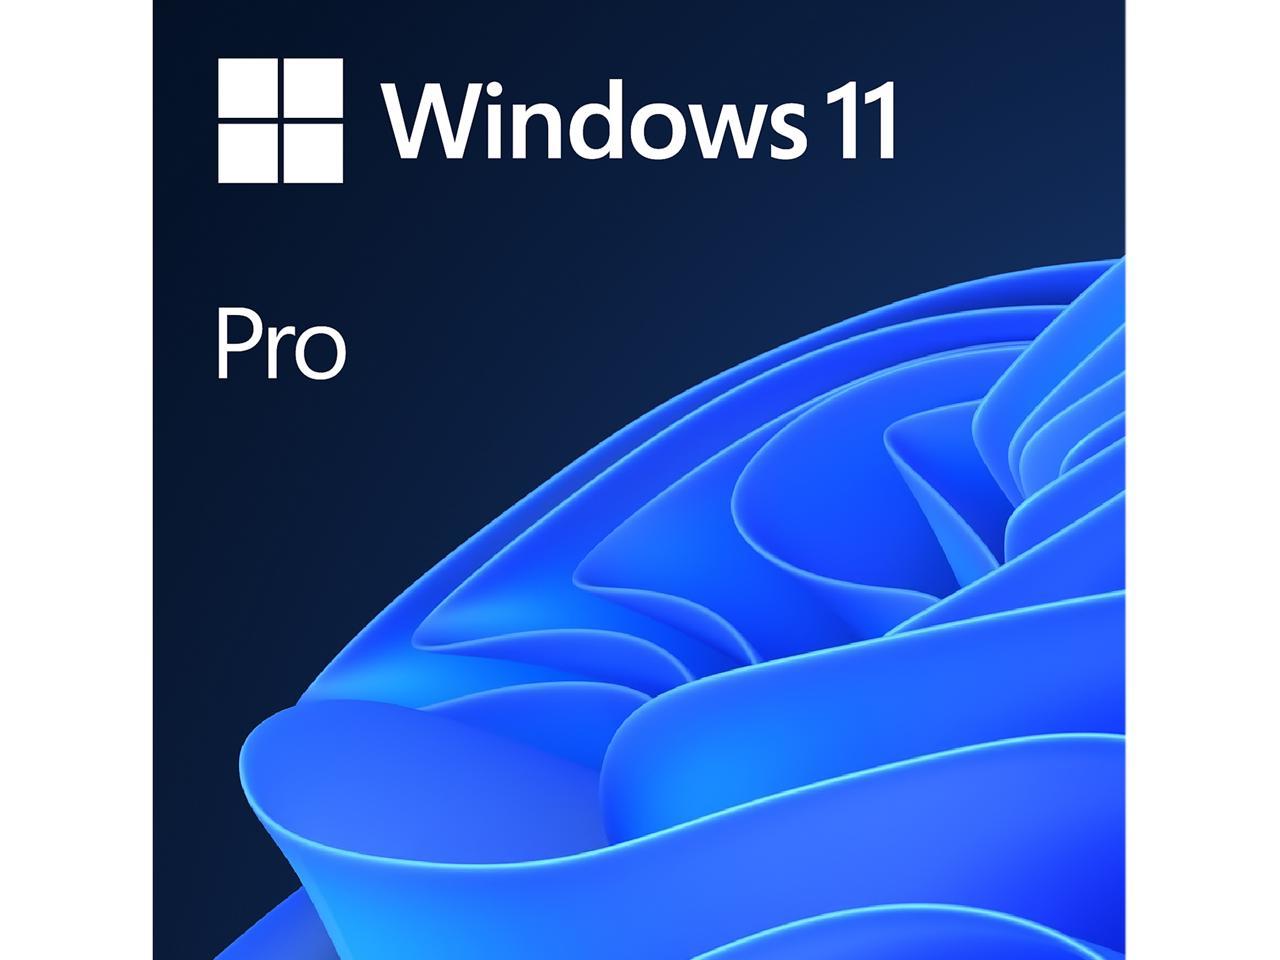 Windows 11 Pro: Sử dụng Windows 11 Pro để truy cập vào công nghệ tiên tiến và cải thiện hiệu suất làm việc của bạn. Nhấn vào hình ảnh để khám phá các tính năng tuyệt vời trên hệ điều hành mới nhất này.